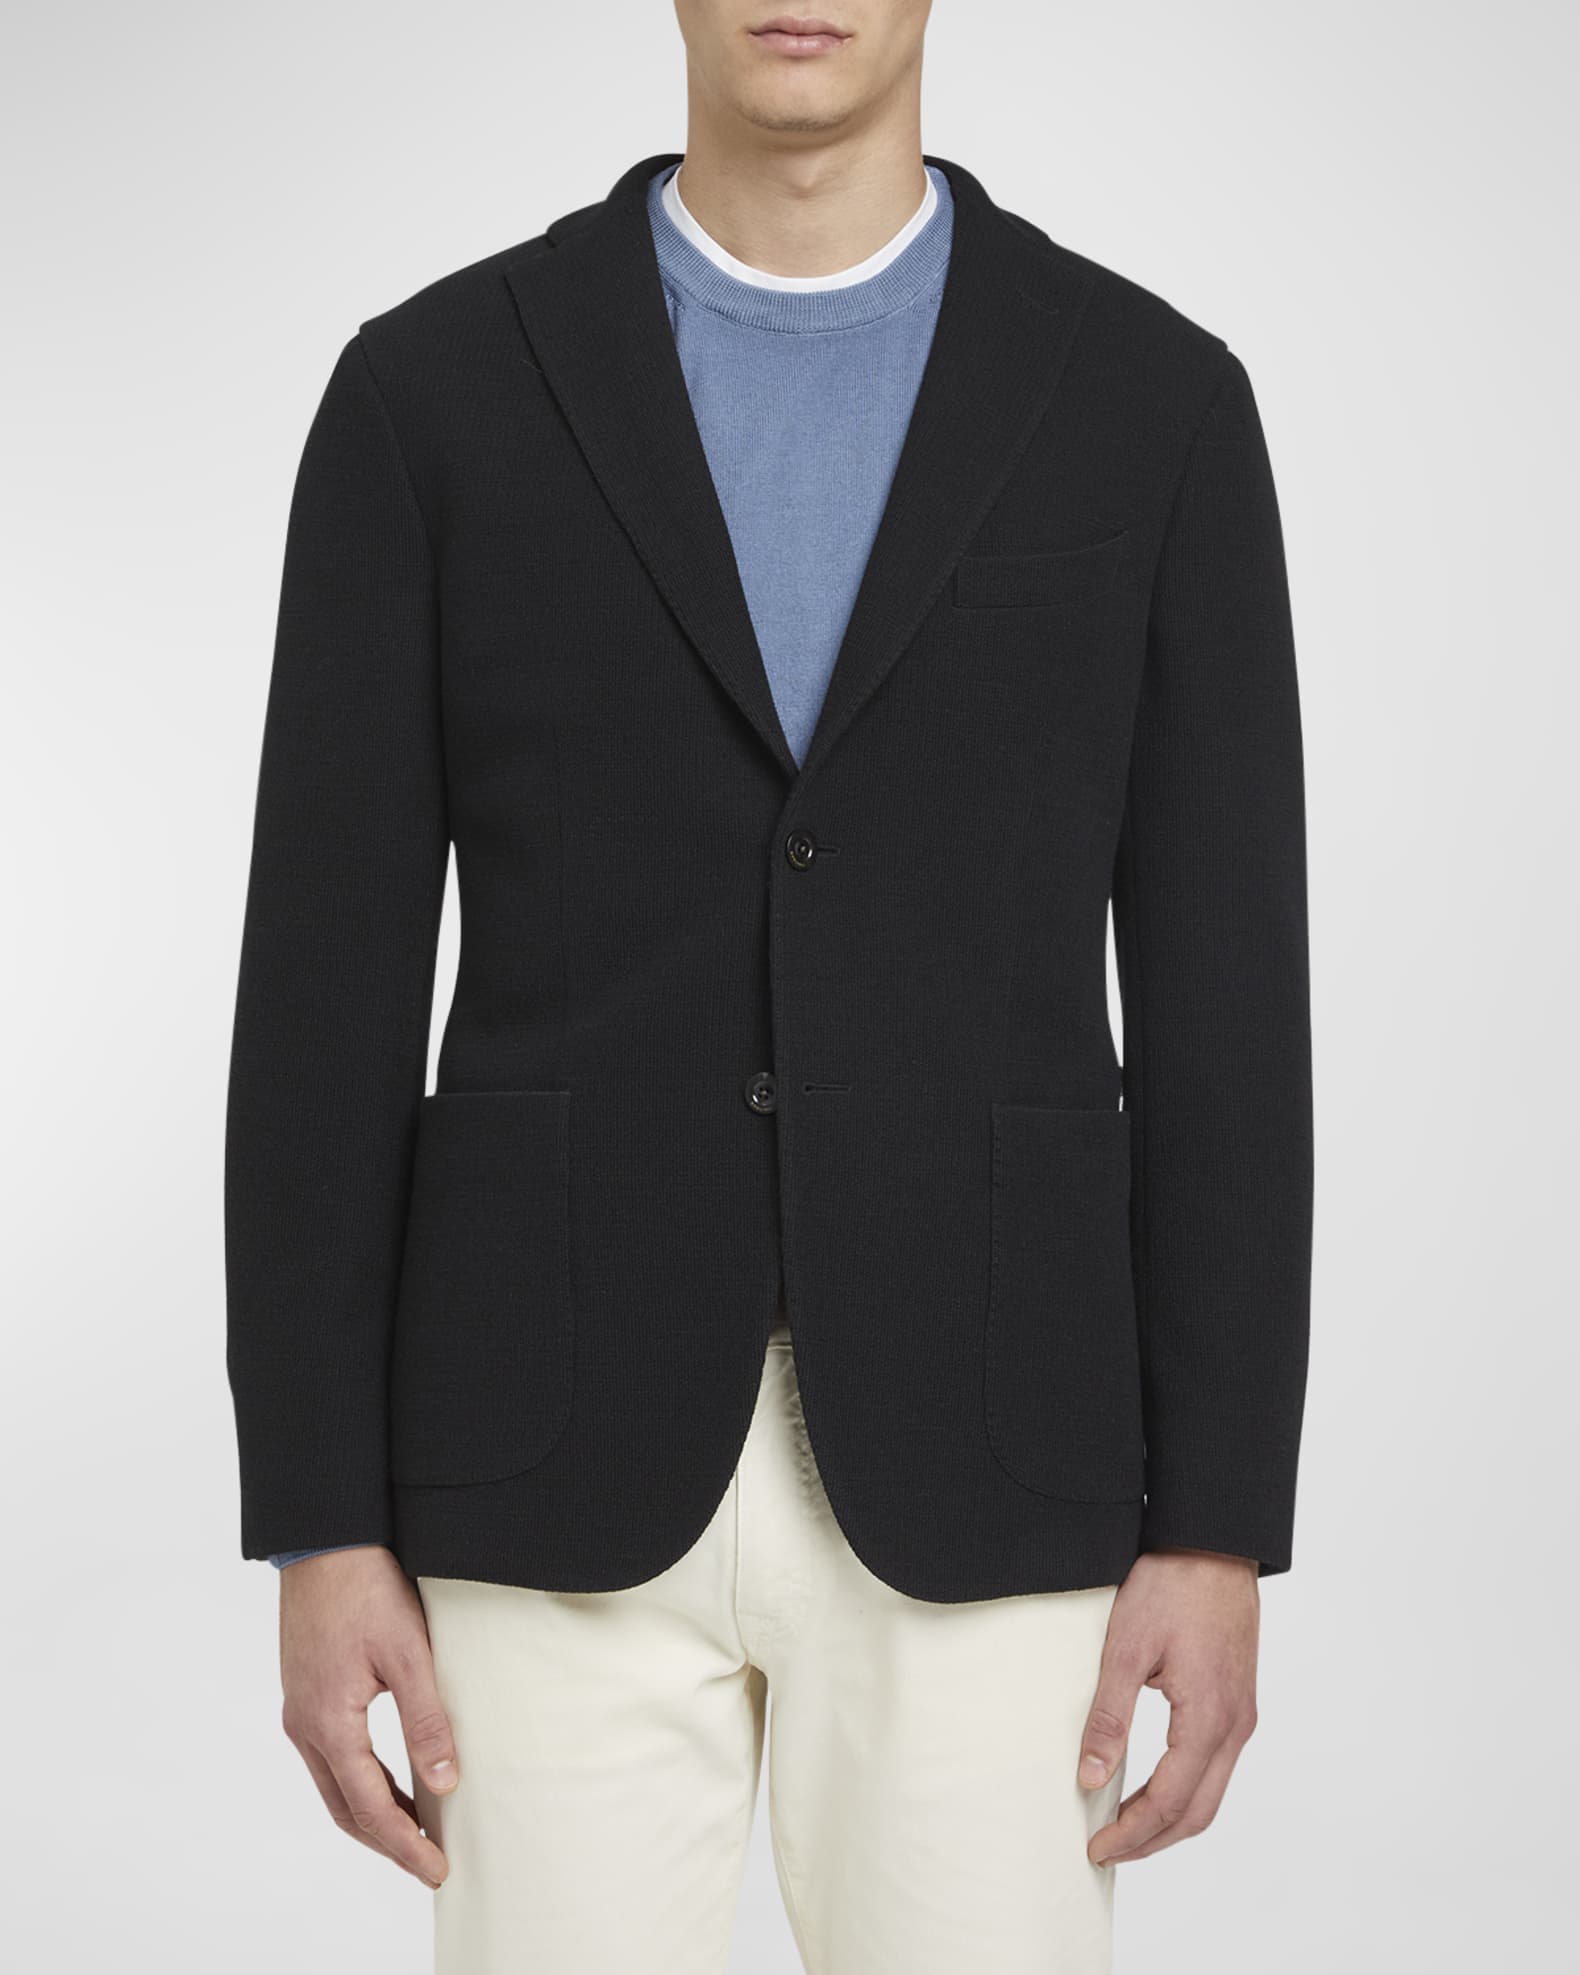 Louis Vuitton Preppy Wool Blazer Dark Navy. Size 40